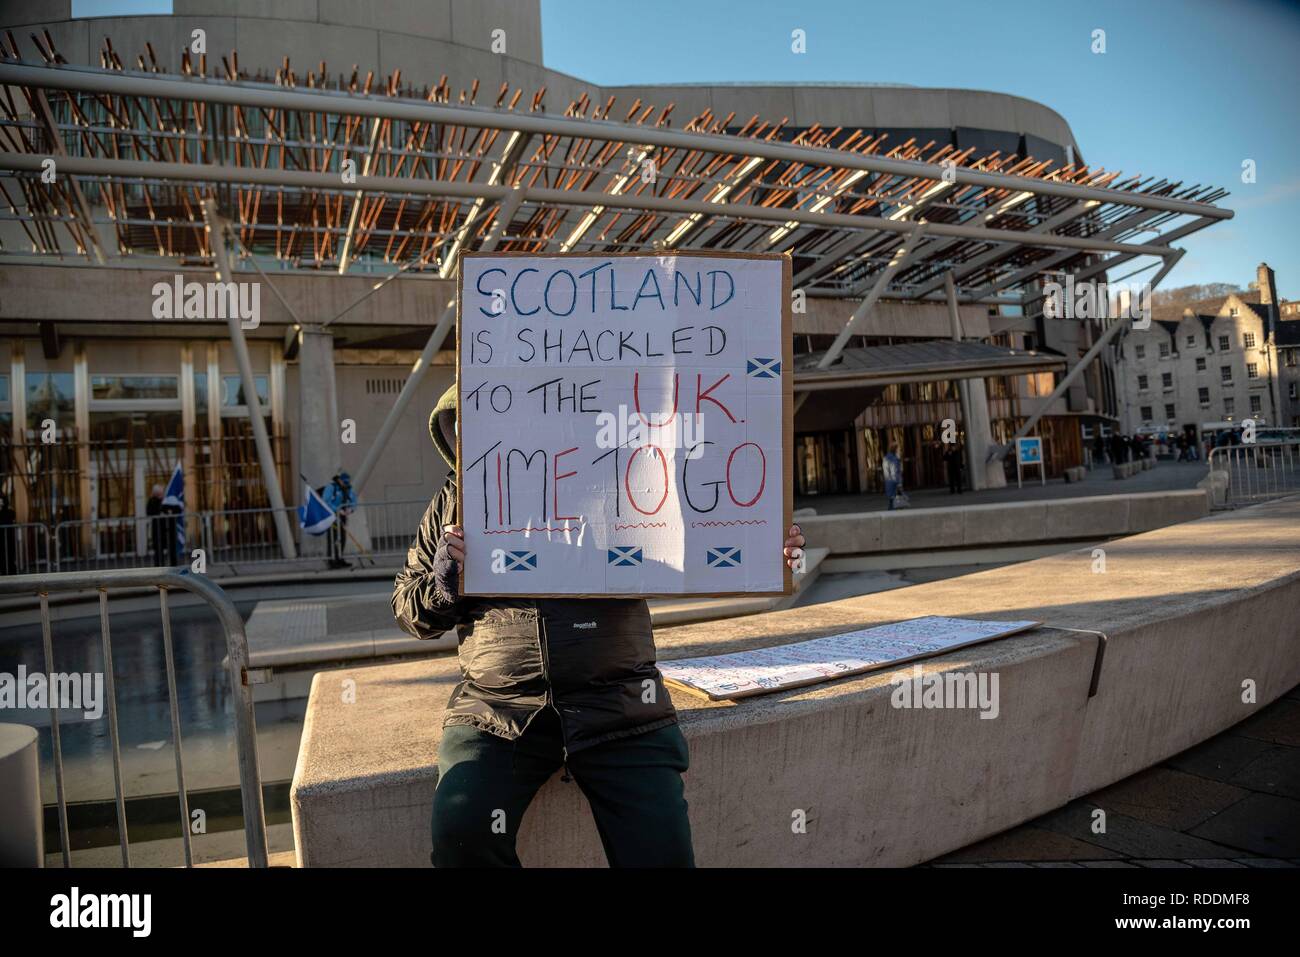 Un homme est vu holding a placard à l'extérieur de l'édifice du parlement écossais au cours d'une protestation flash. Les manifestants se sont réunis à l'extérieur de bâtiment du parlement écossais à Édimbourg pour protester Brexit et à faire pression pour un deuxième référendum sur l'indépendance. Banque D'Images